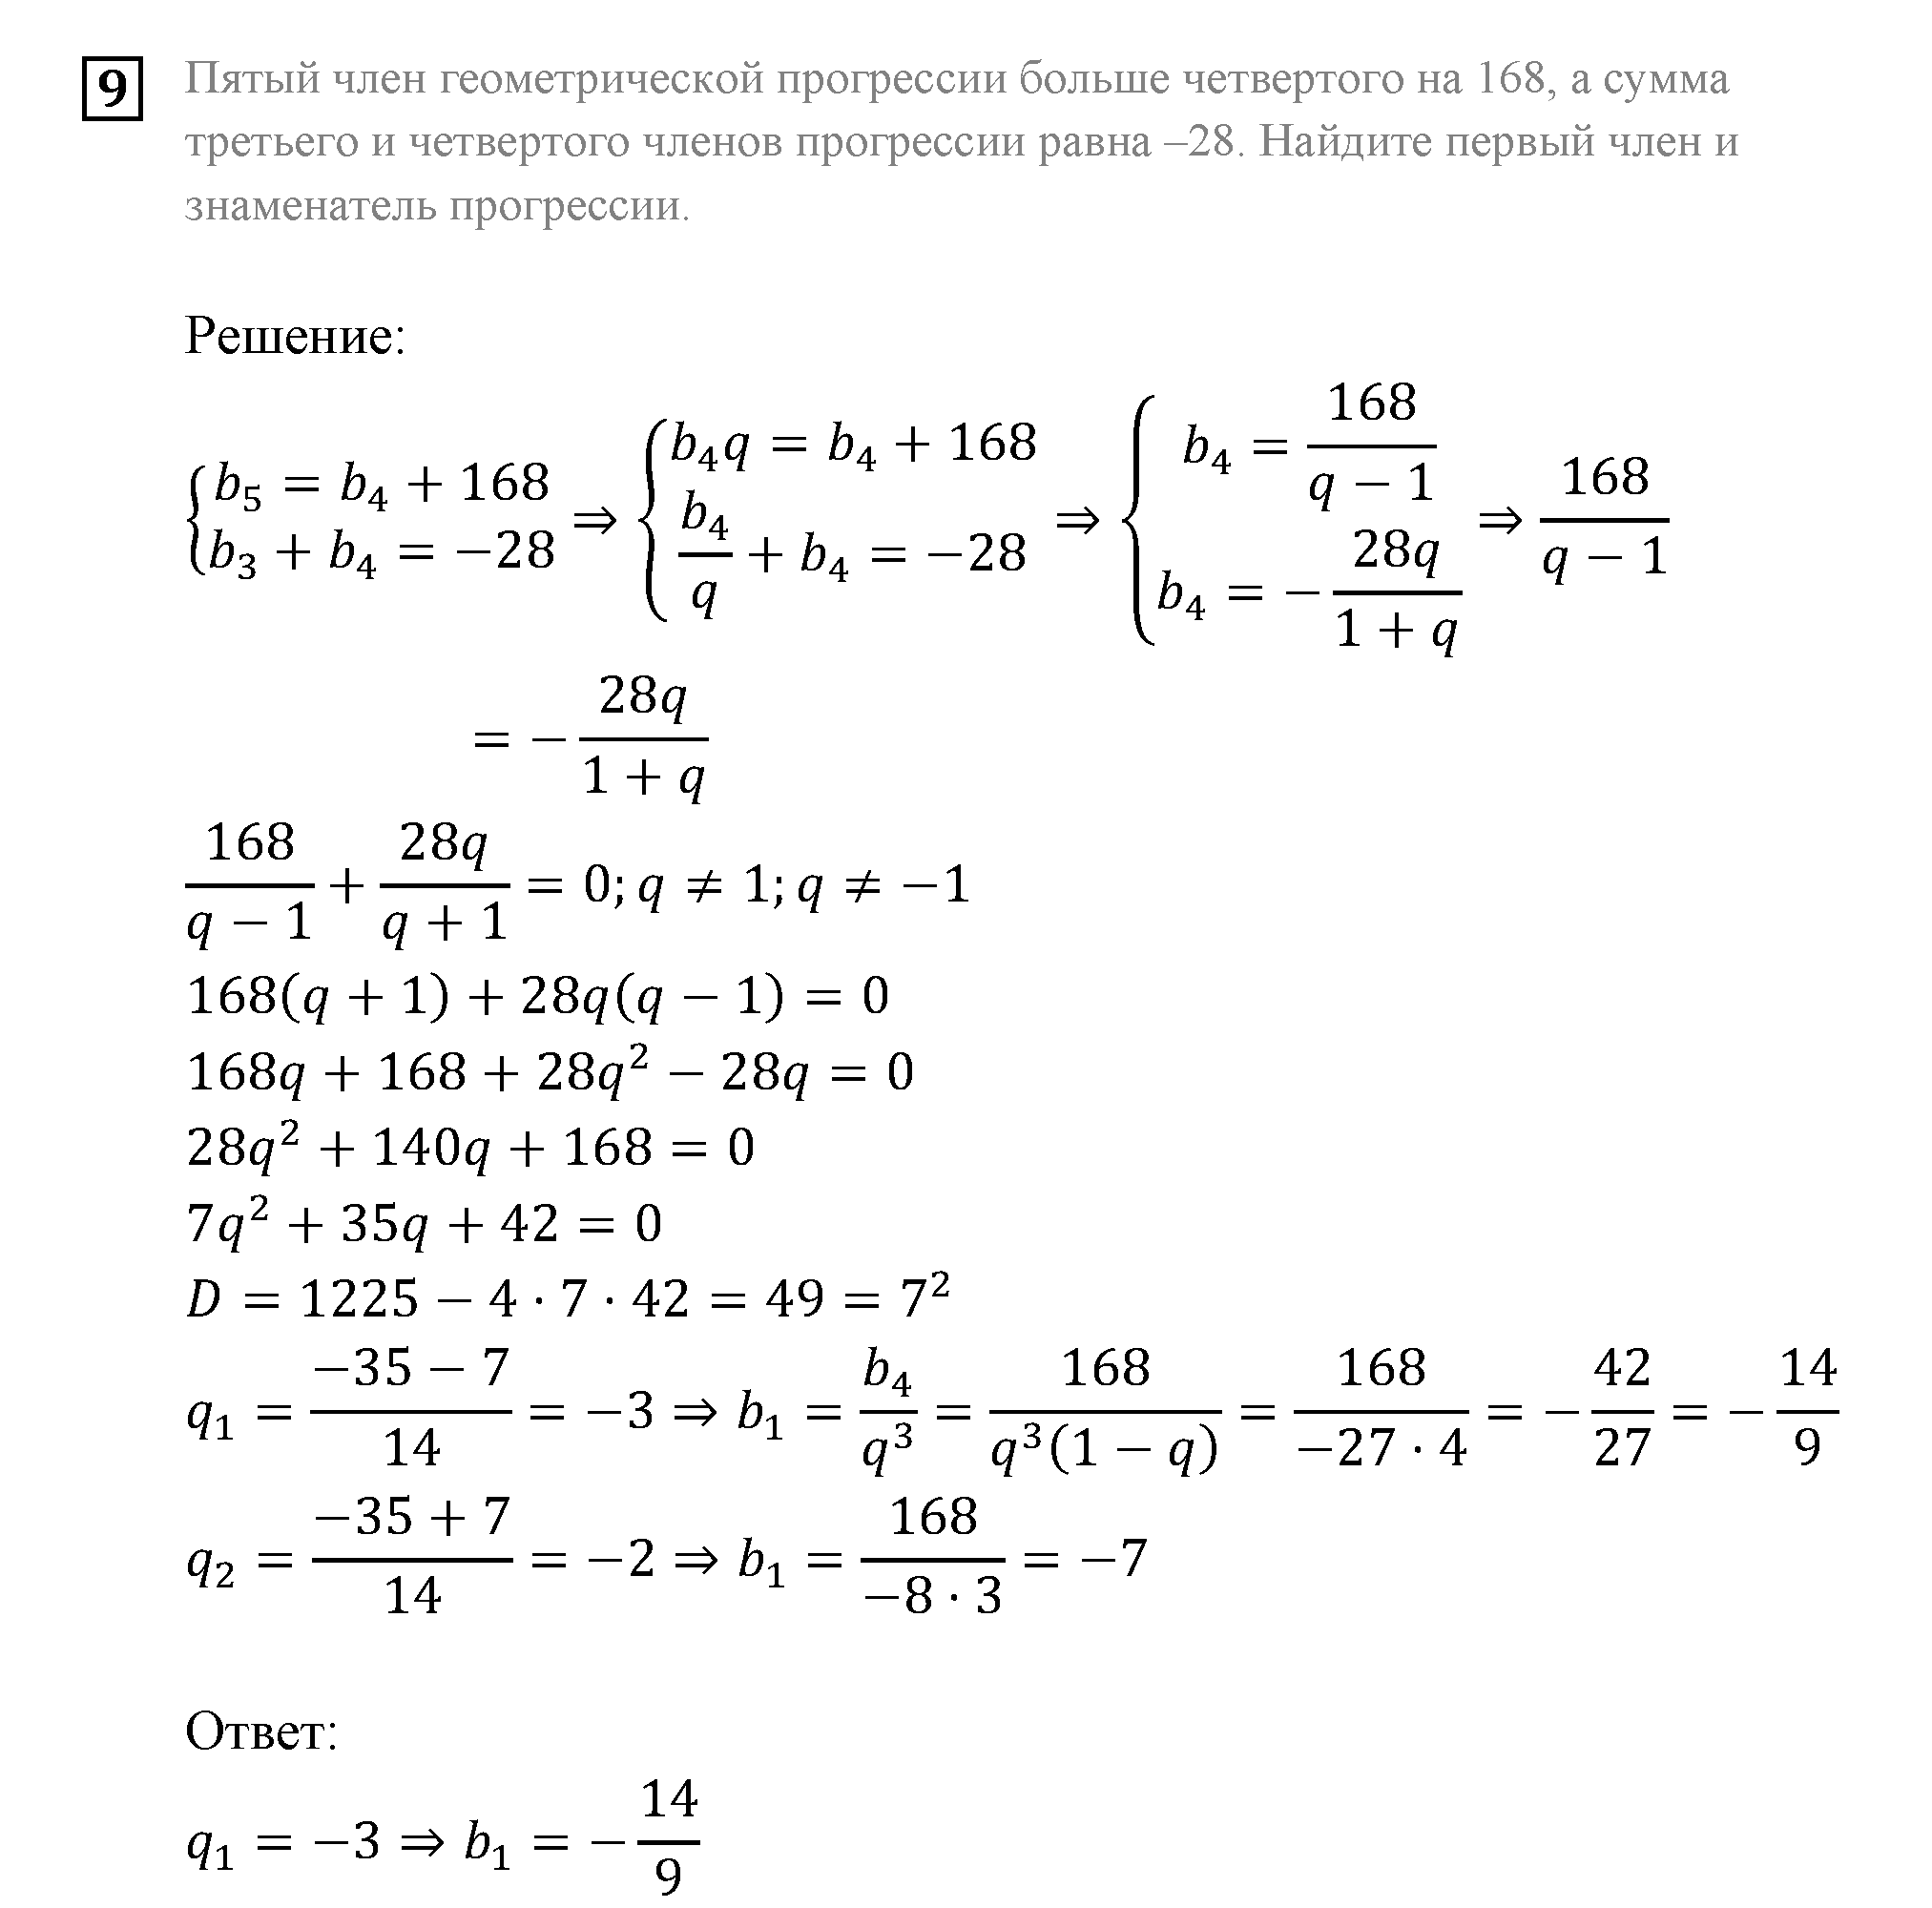 Домашняя контрольная работа 4 Вариант №1 алгебра 9 класс Мордкович